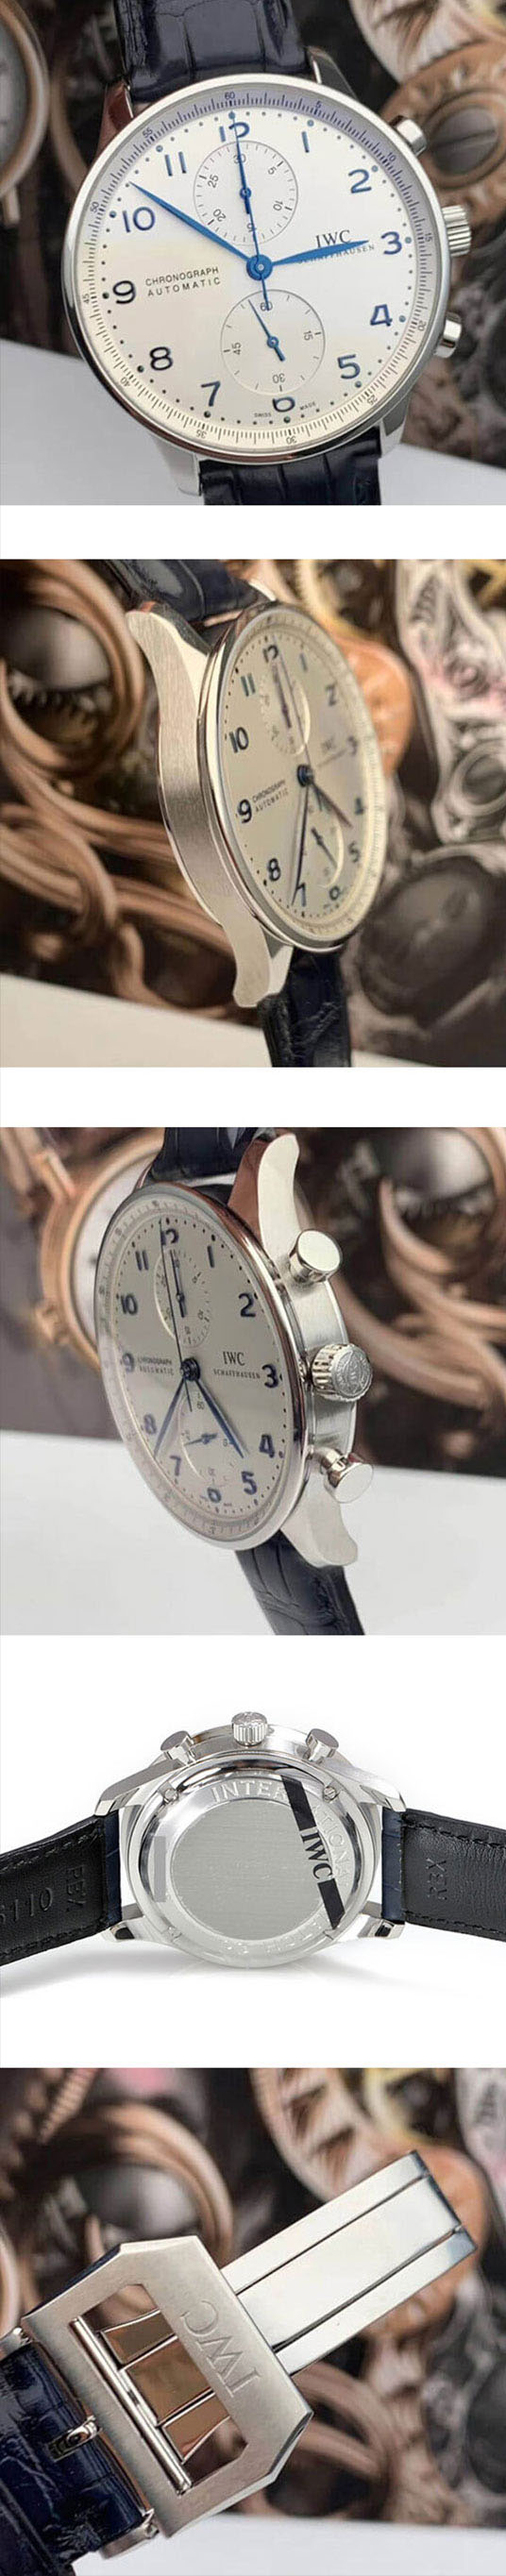 メンズ腕時計販促IWCポルトギーゼIW371446ホワイト文字盤アラビア時字